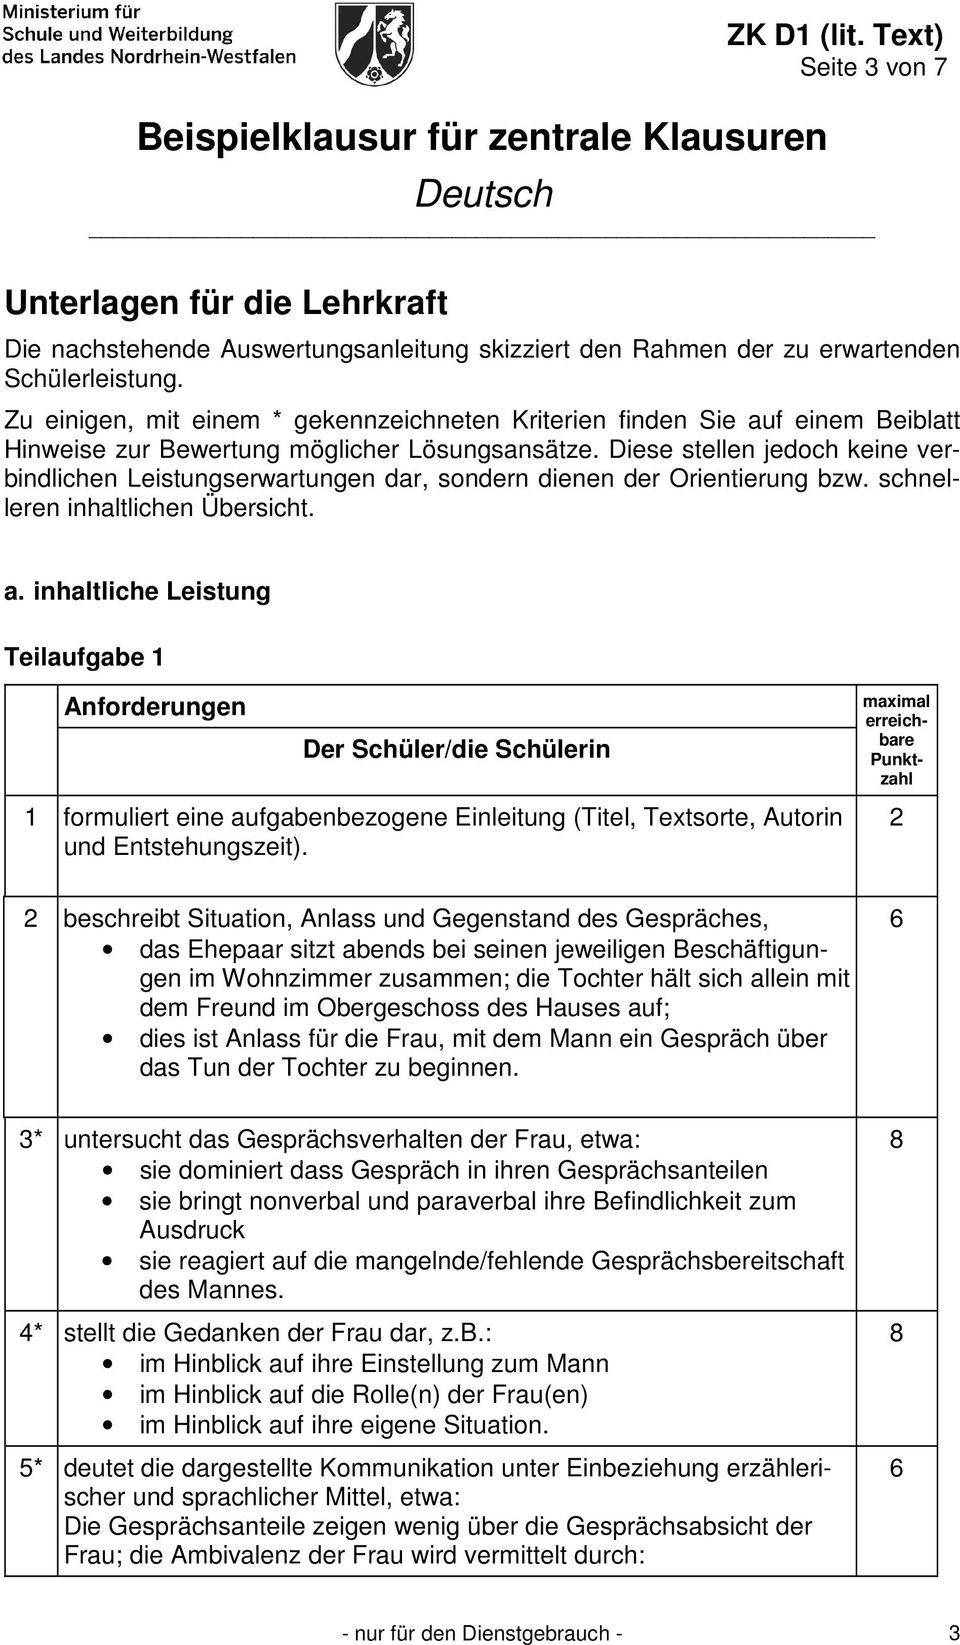 Beispielklausur Fur Zentrale Klausuren Deutsch Pdf Kostenfreier Download